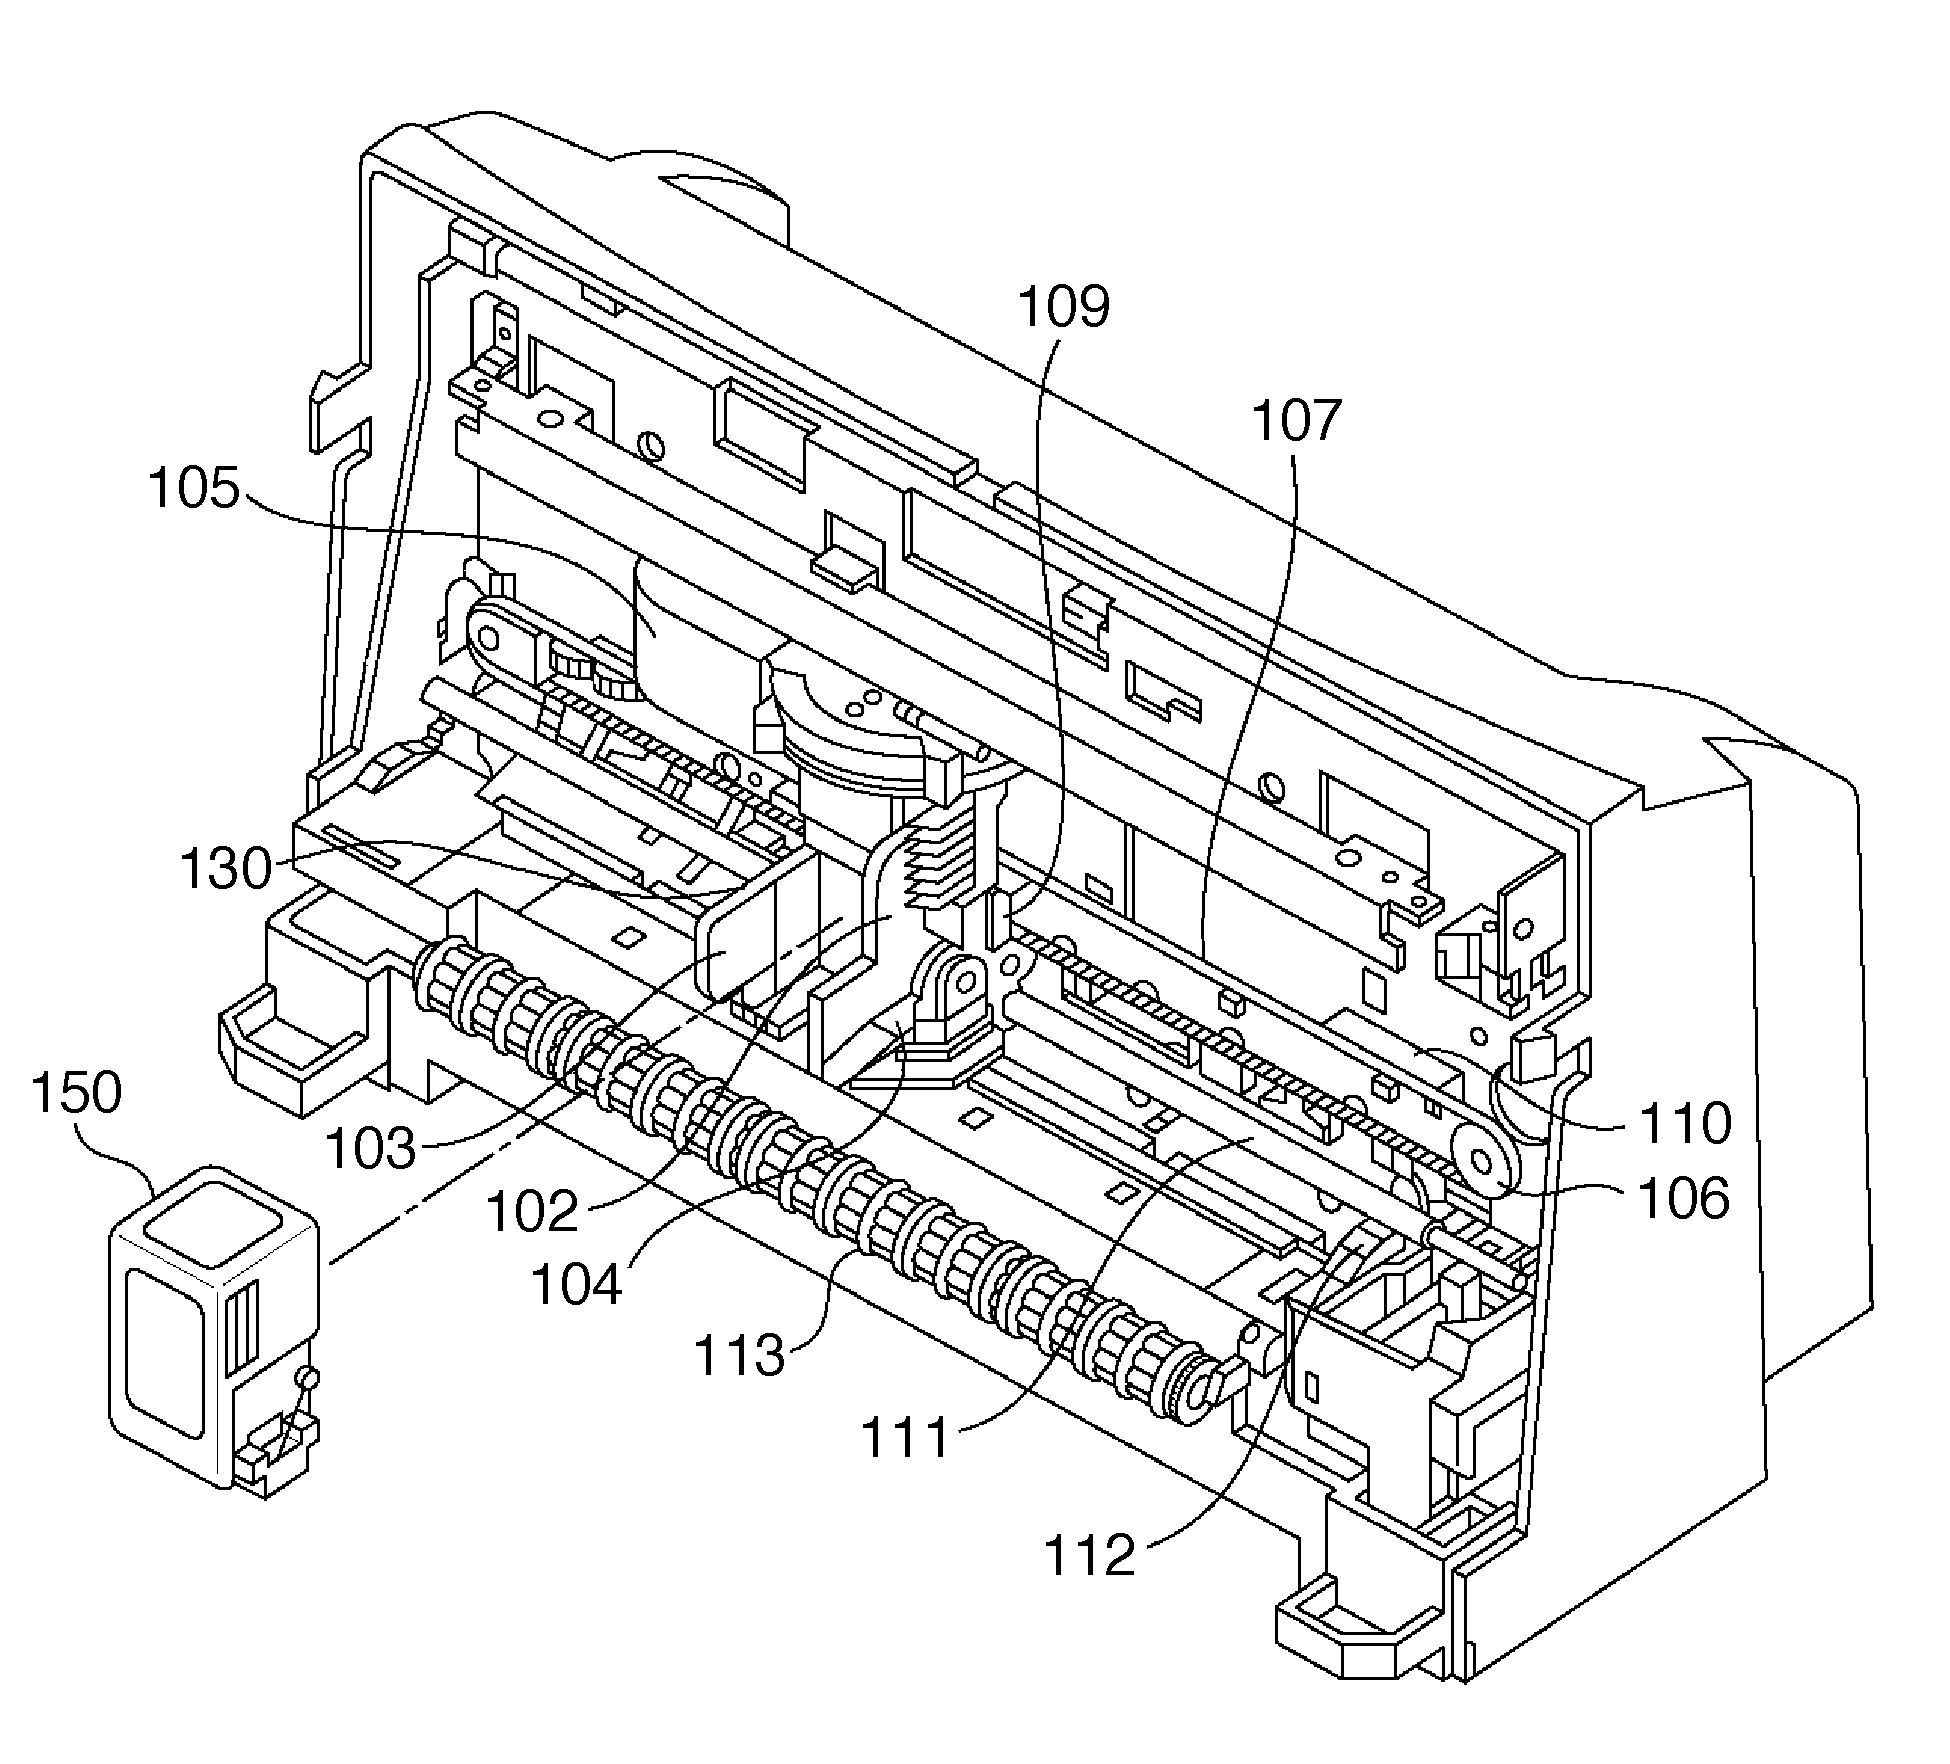 Printing apparatus and printing method